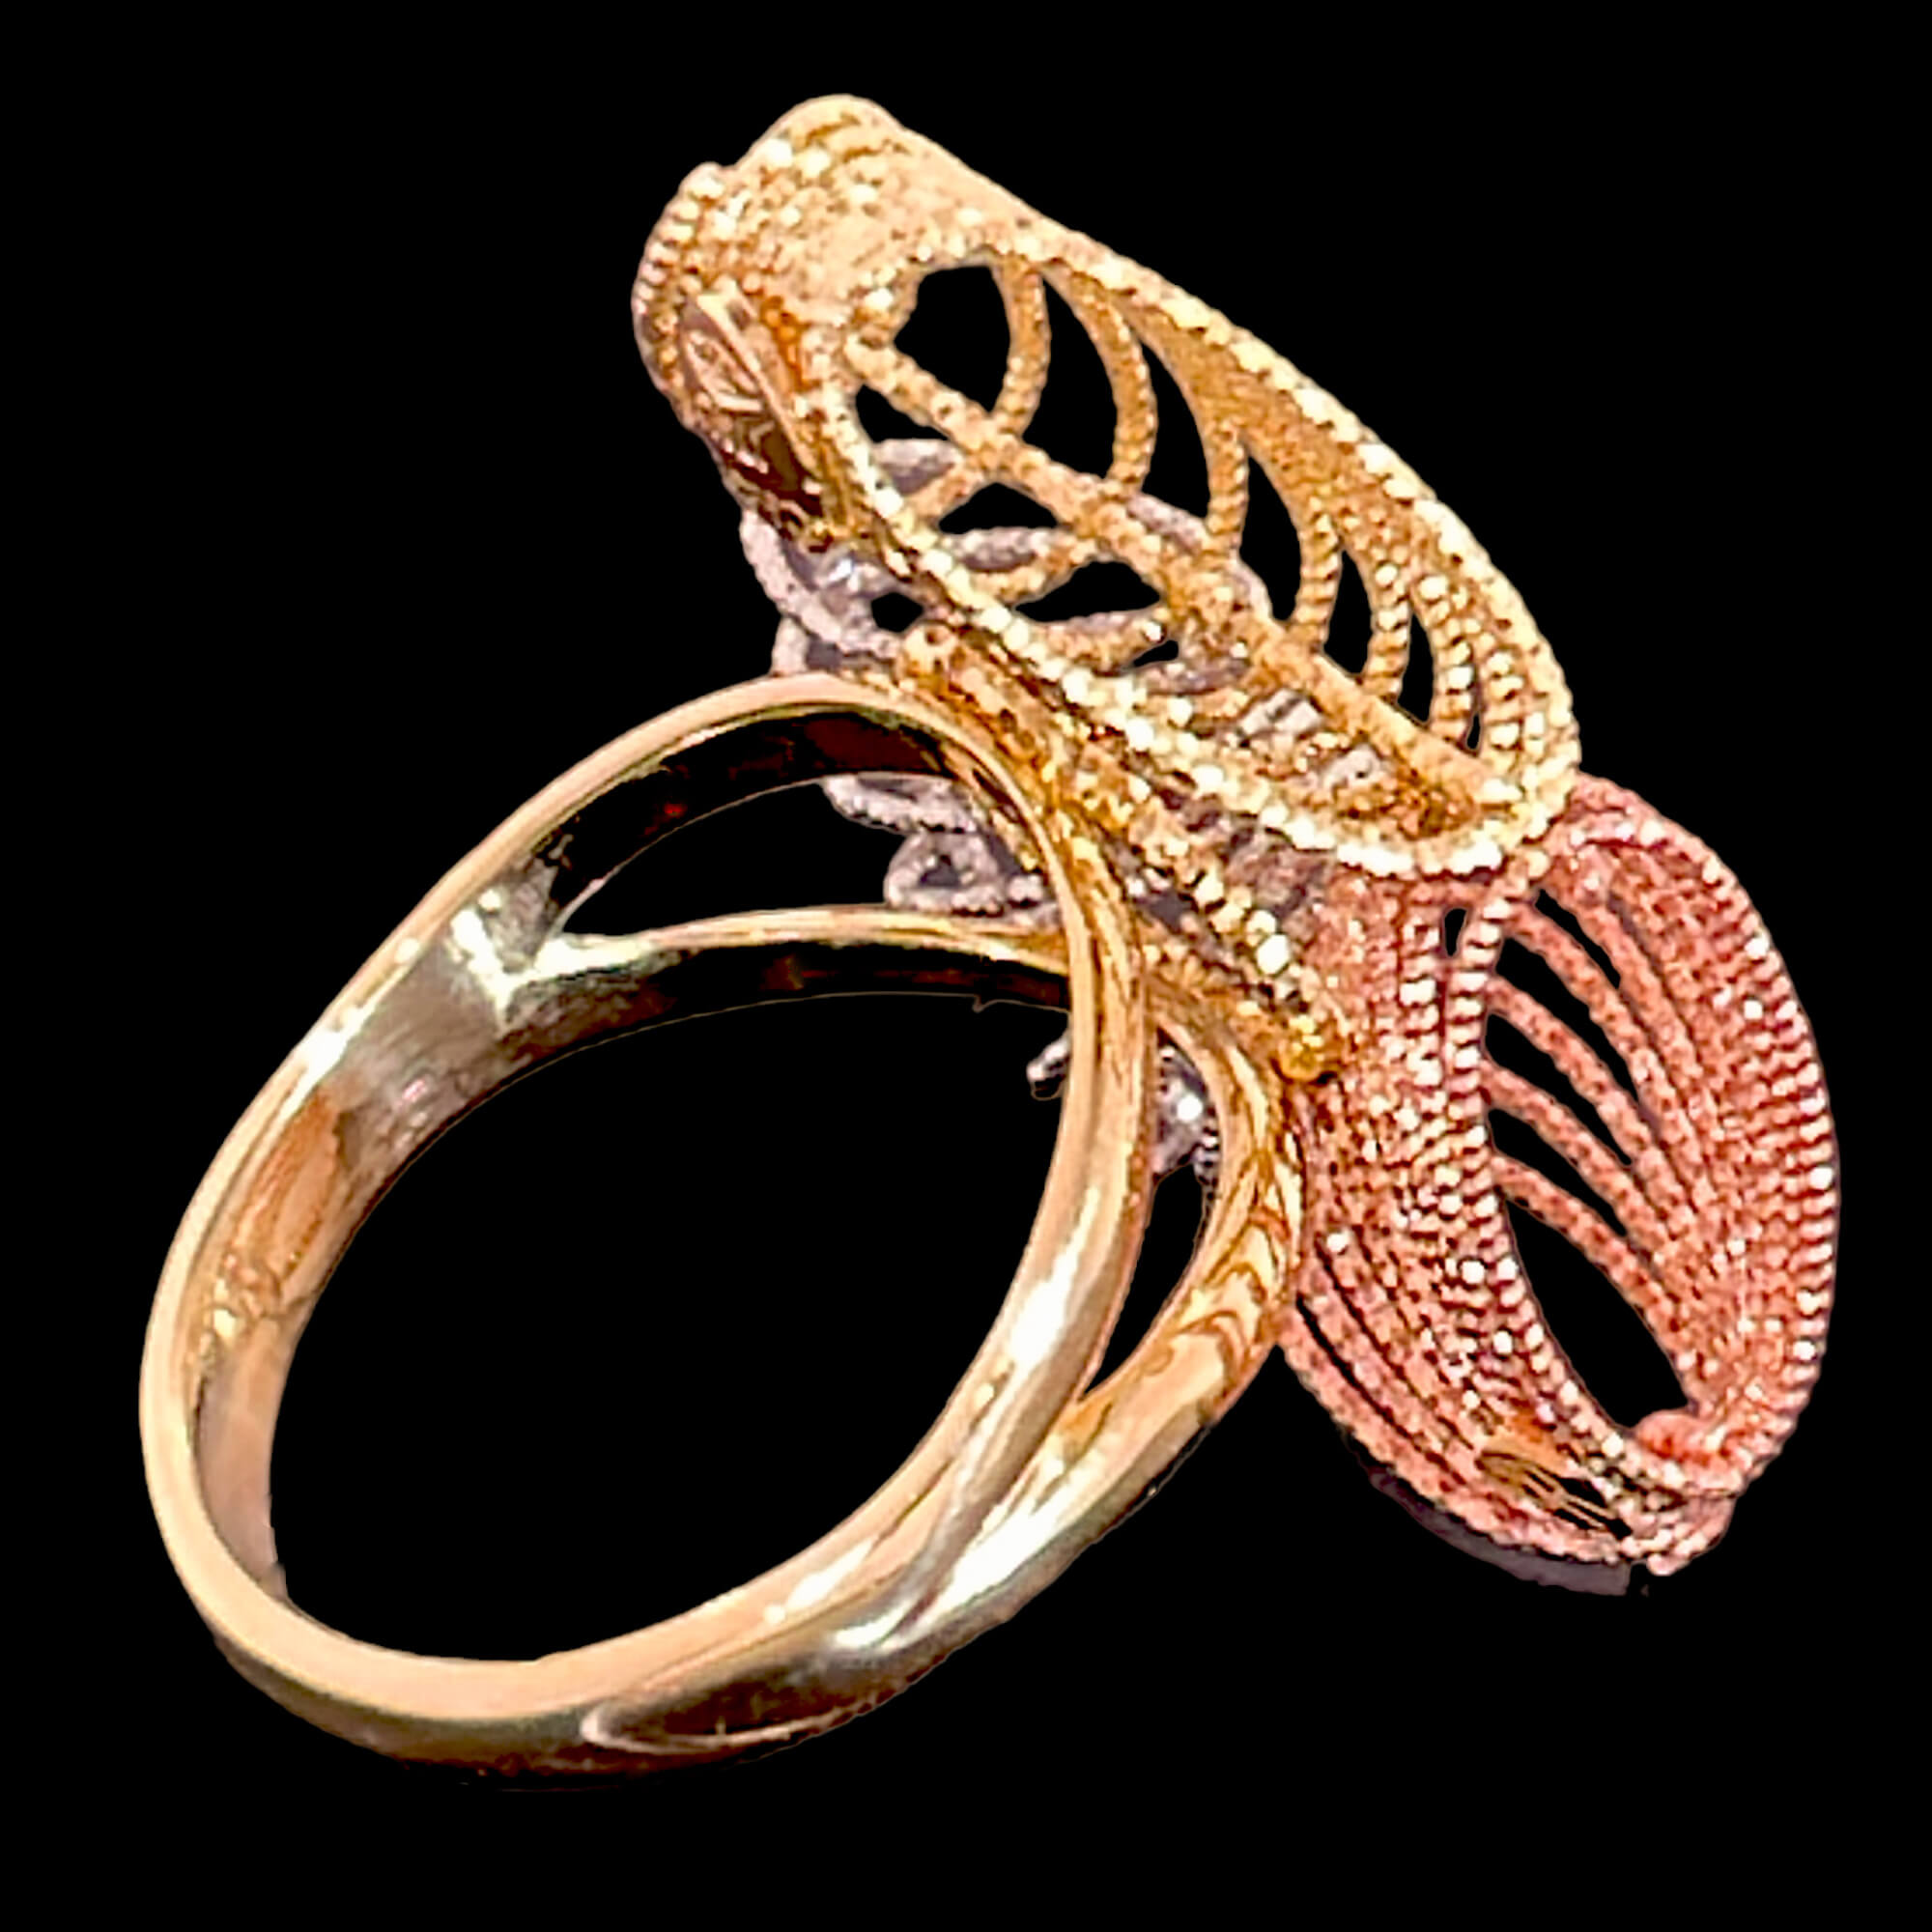 Gearbeiteter dreifarbiger Ring aus 18-karätigem Gold